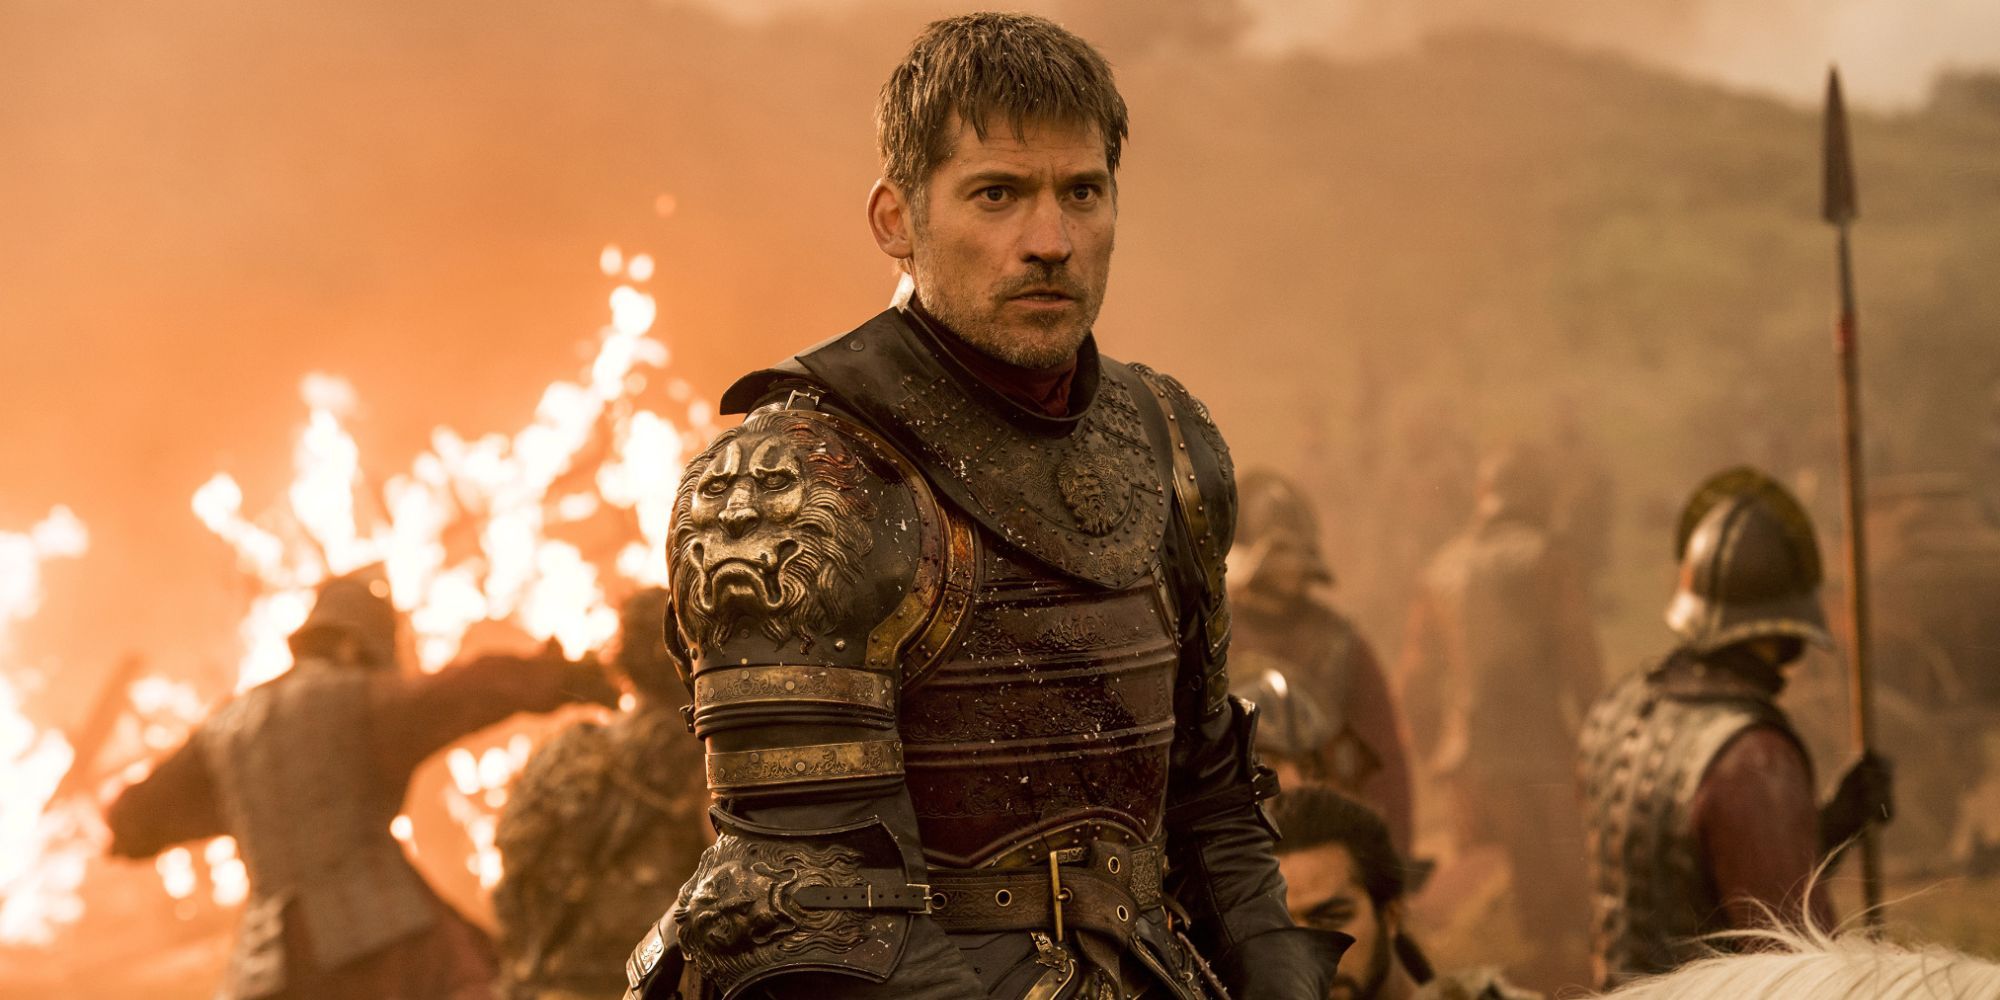 Nikolaj Coster-Waldau as Jaime Lannister in battle in Game of Thrones.